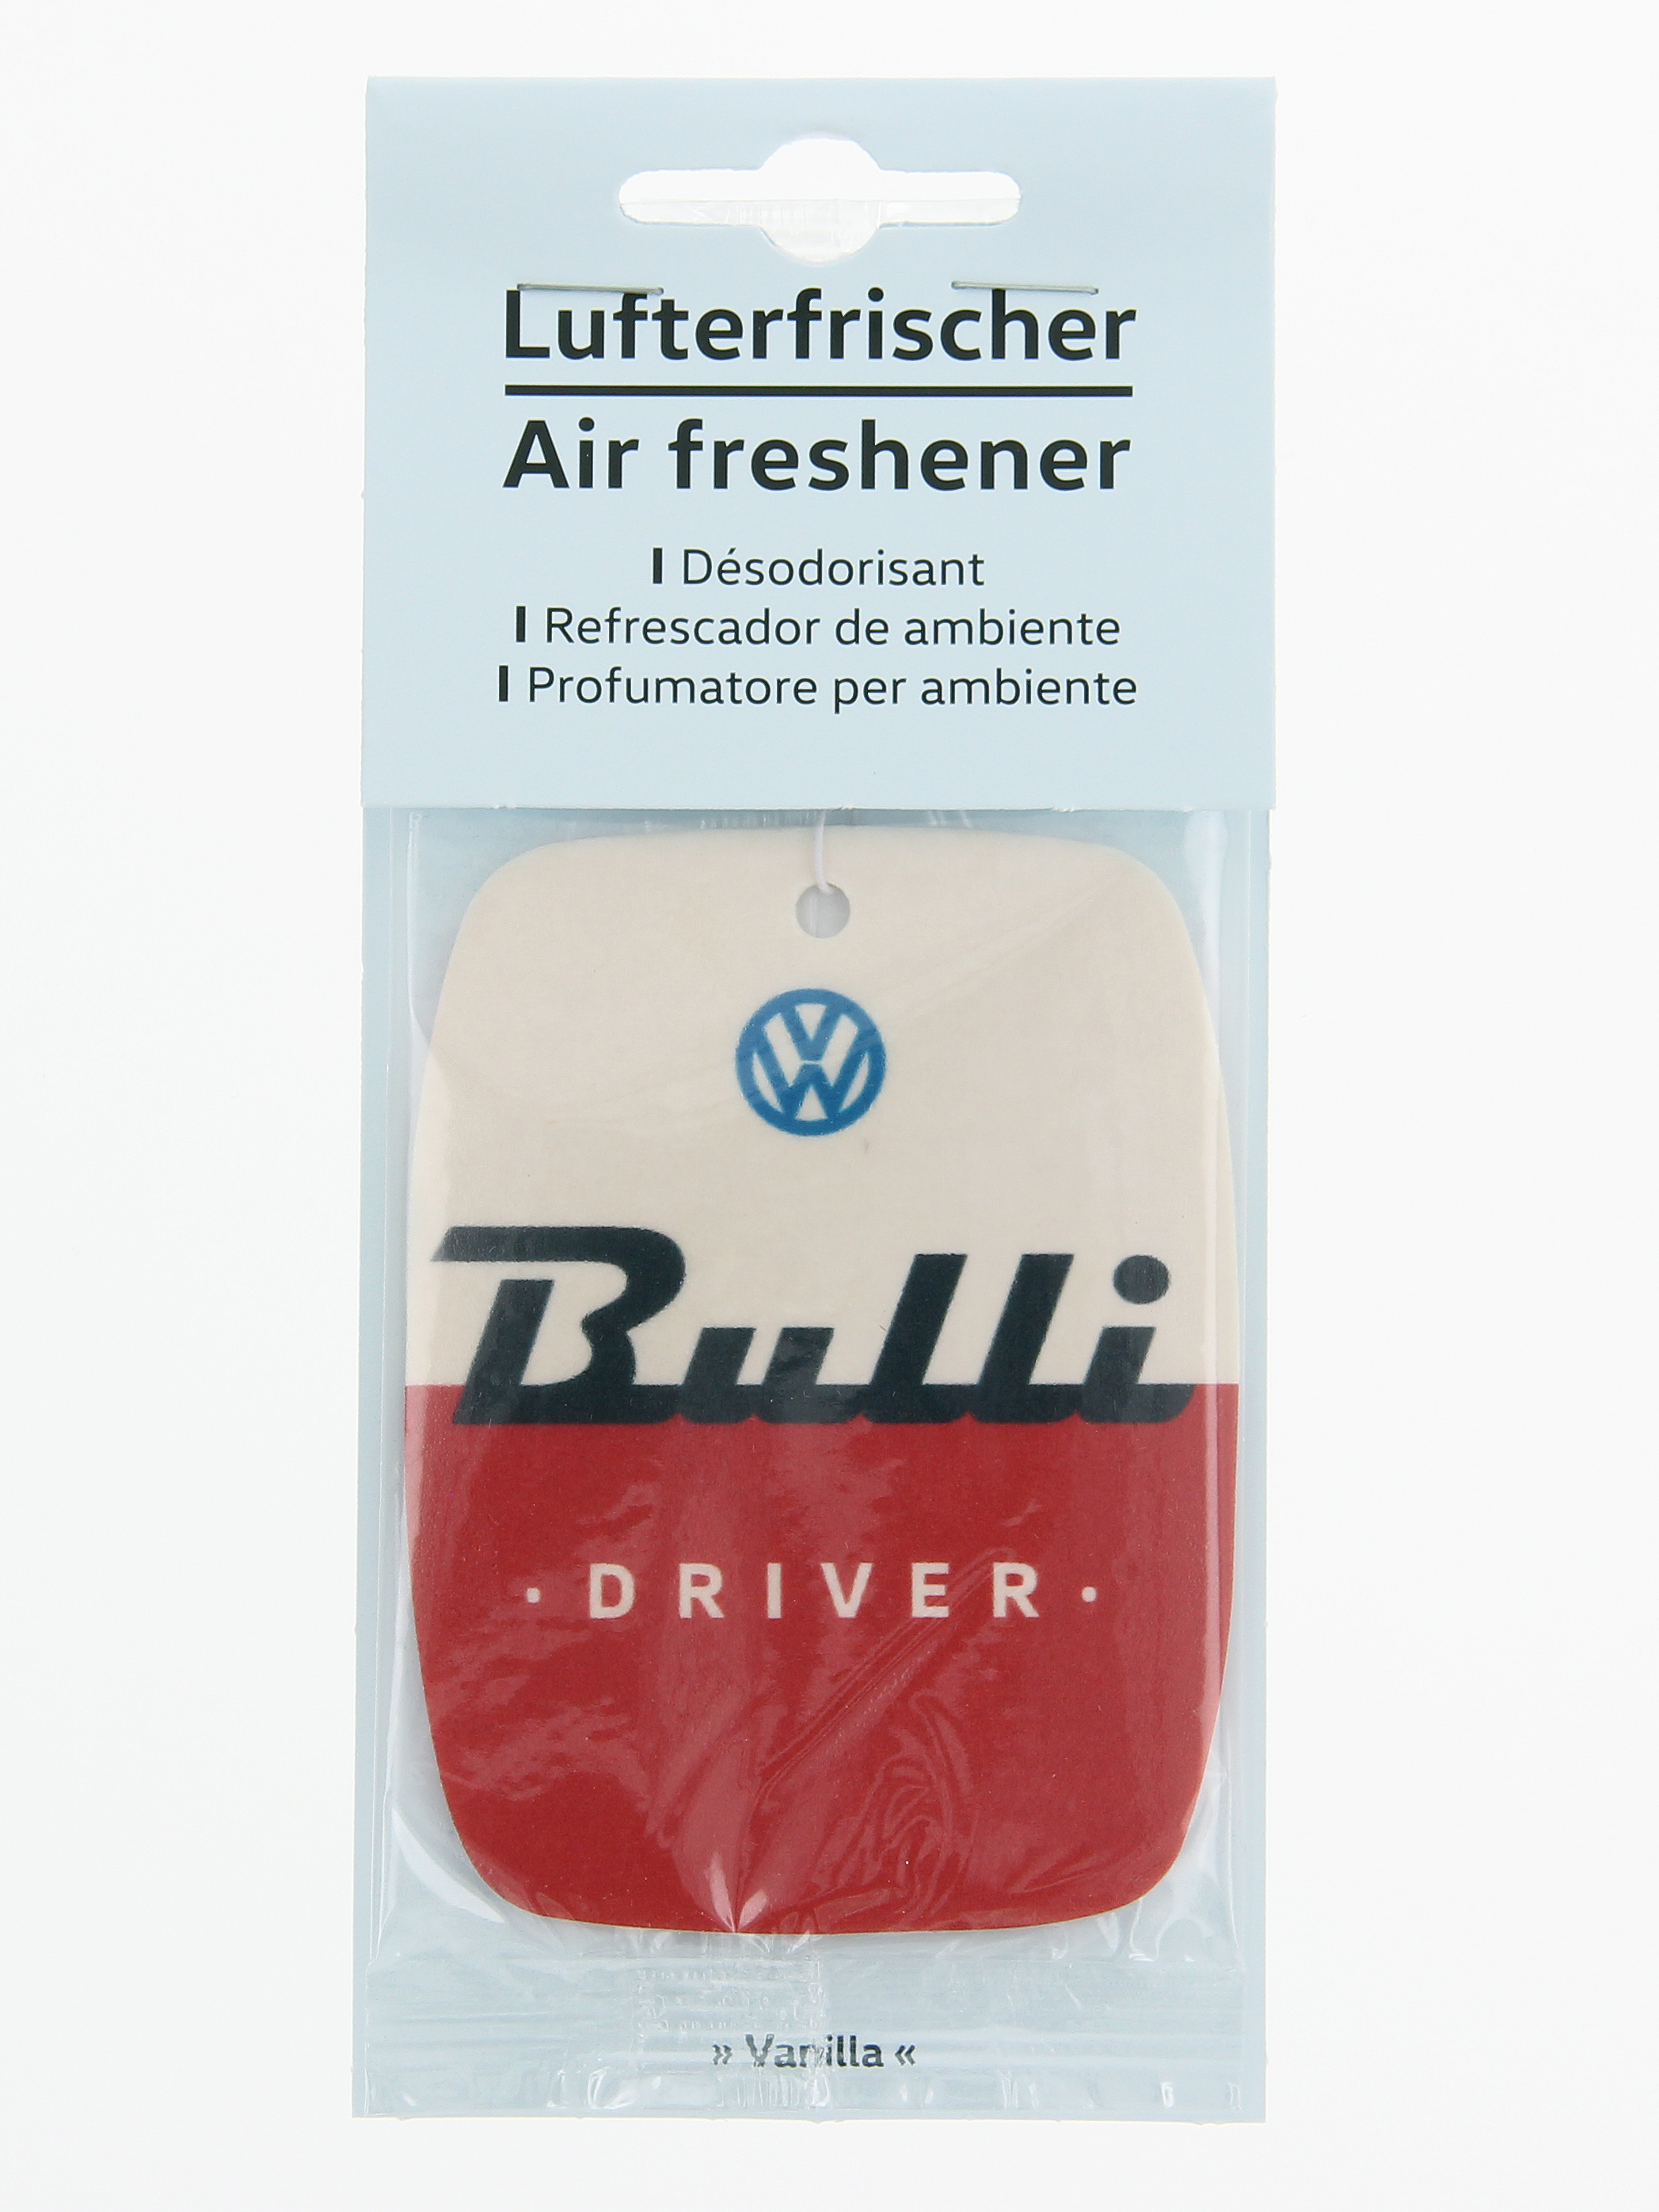 Désodorisant VW Bus "Bulli Driver" set de 2 pièces